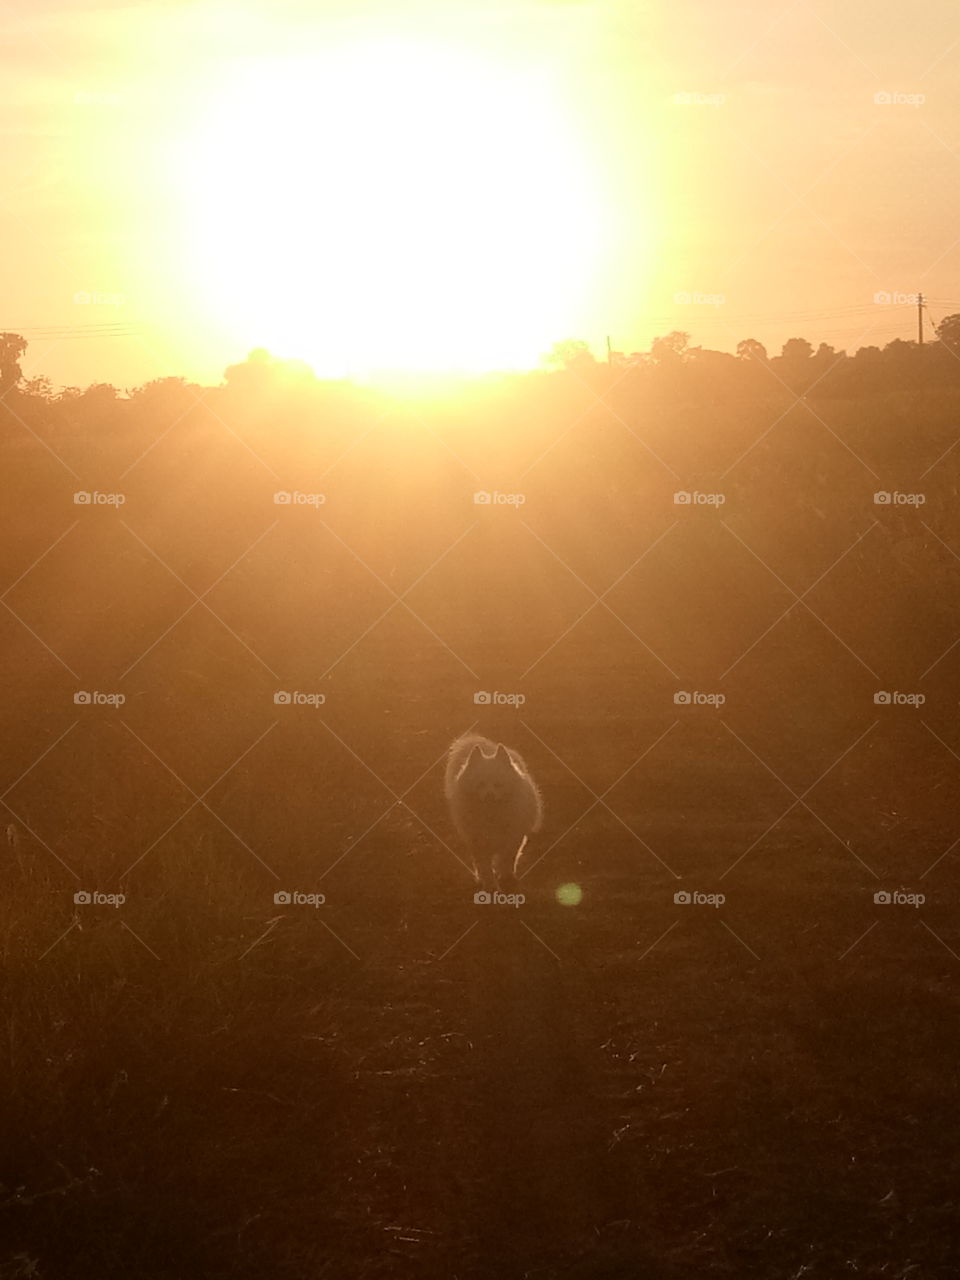 White dog with sunset